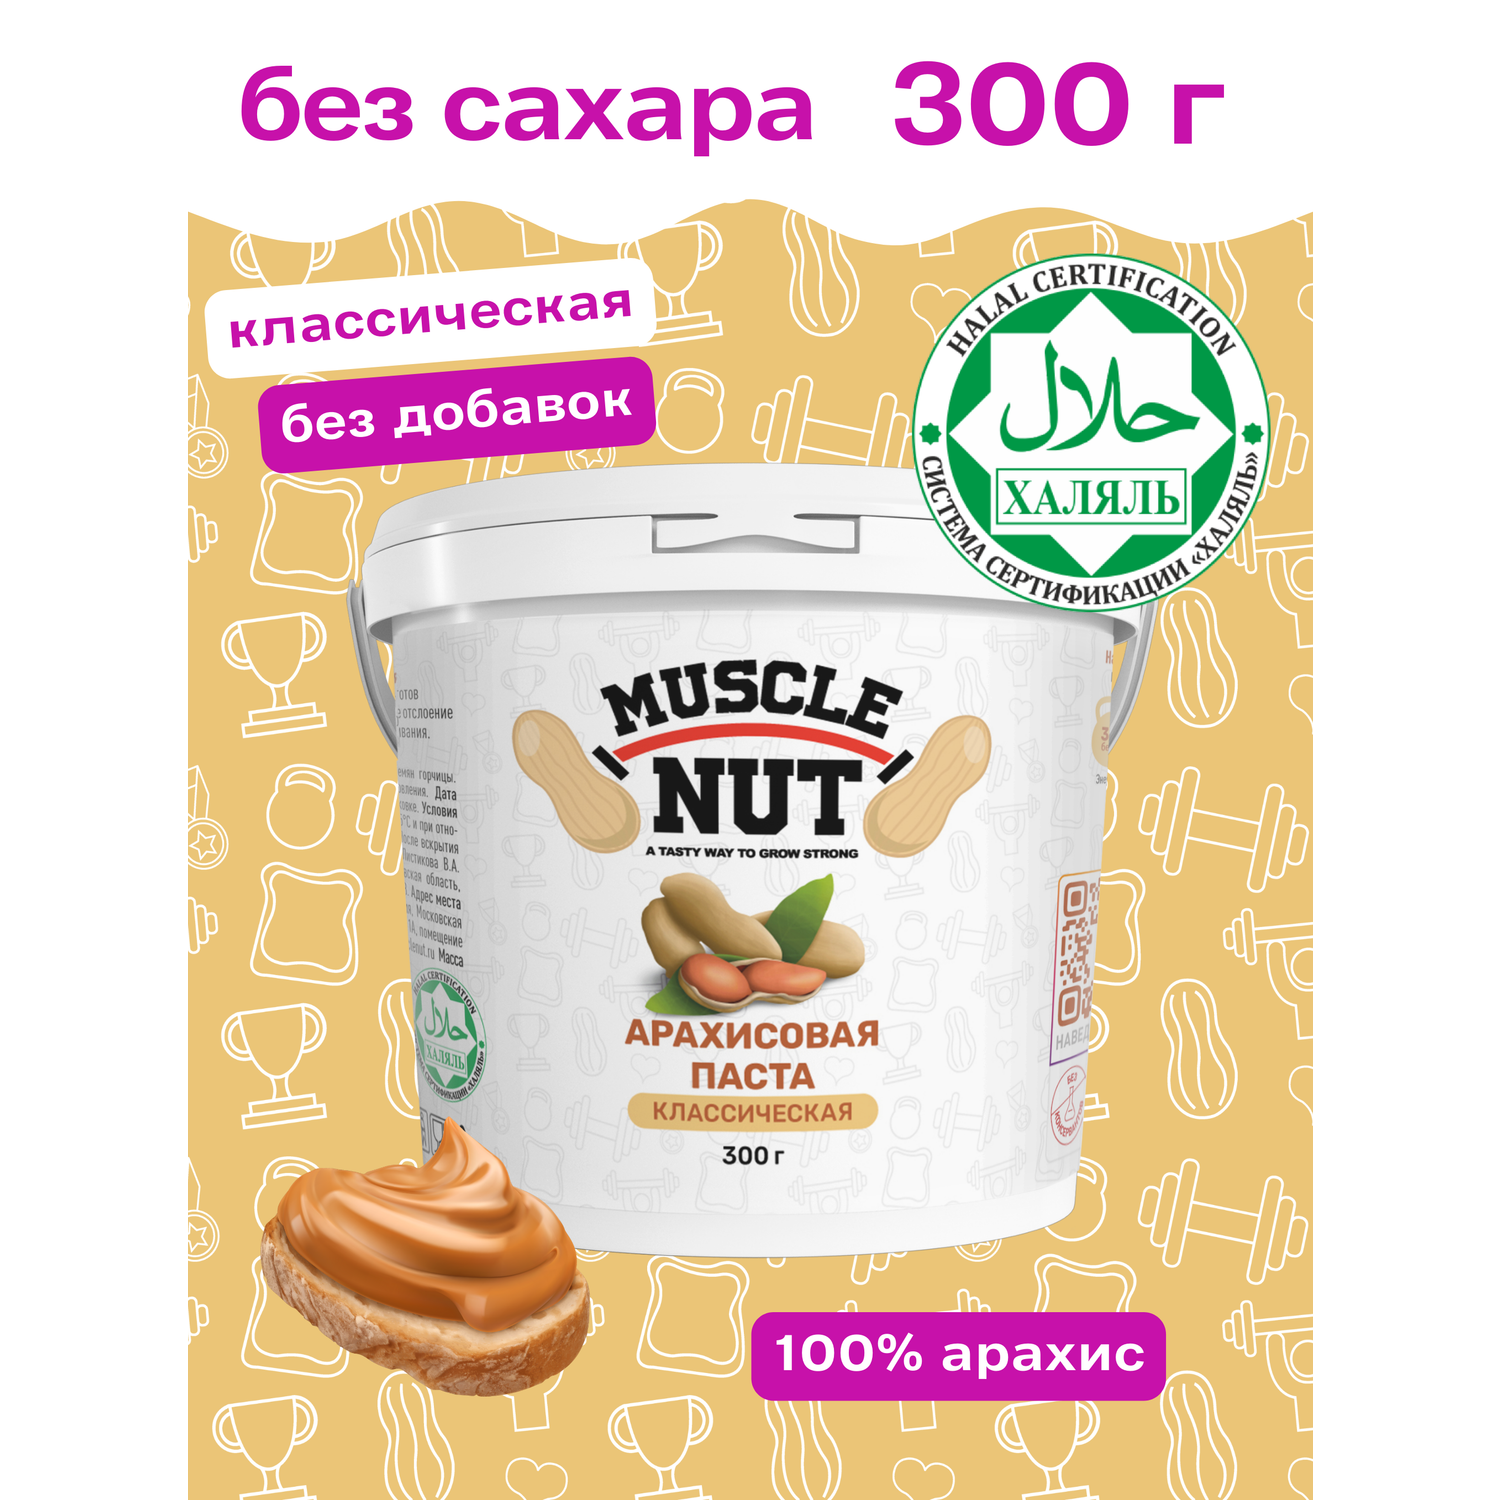 Арахисовая паста Muscle Nut классическая без сахара натуральная высокобелковая 300 г - фото 2